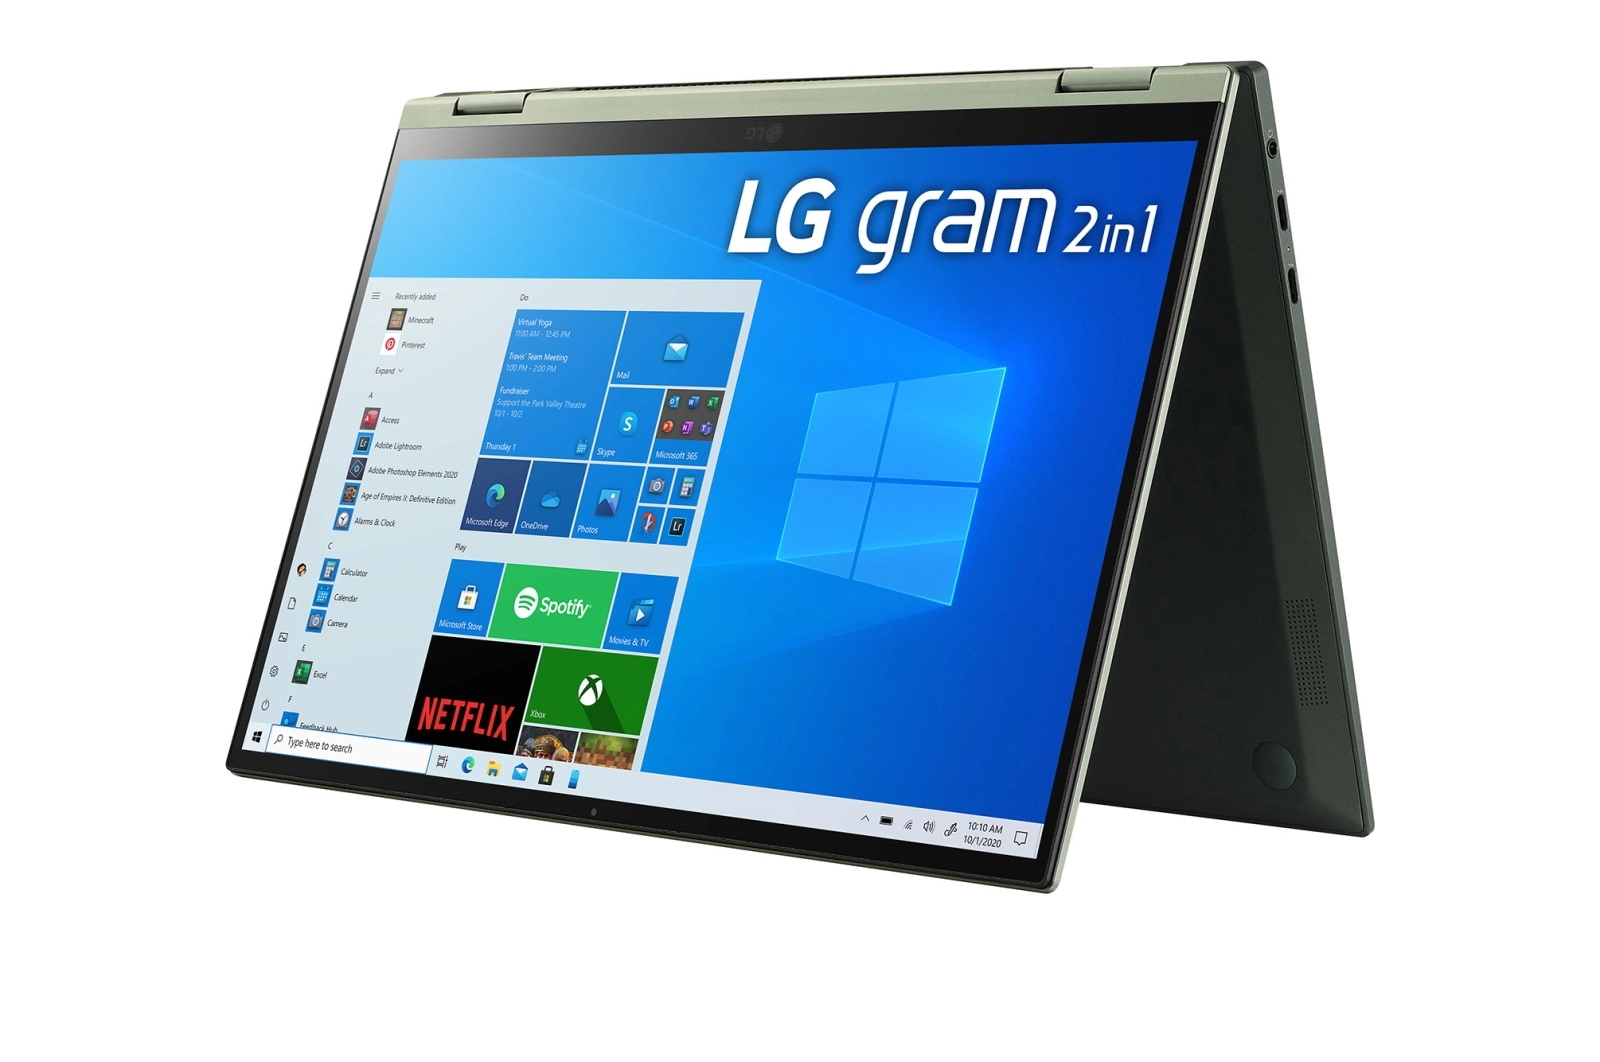 LG 16T90P-K.AAG7U1 laptop image